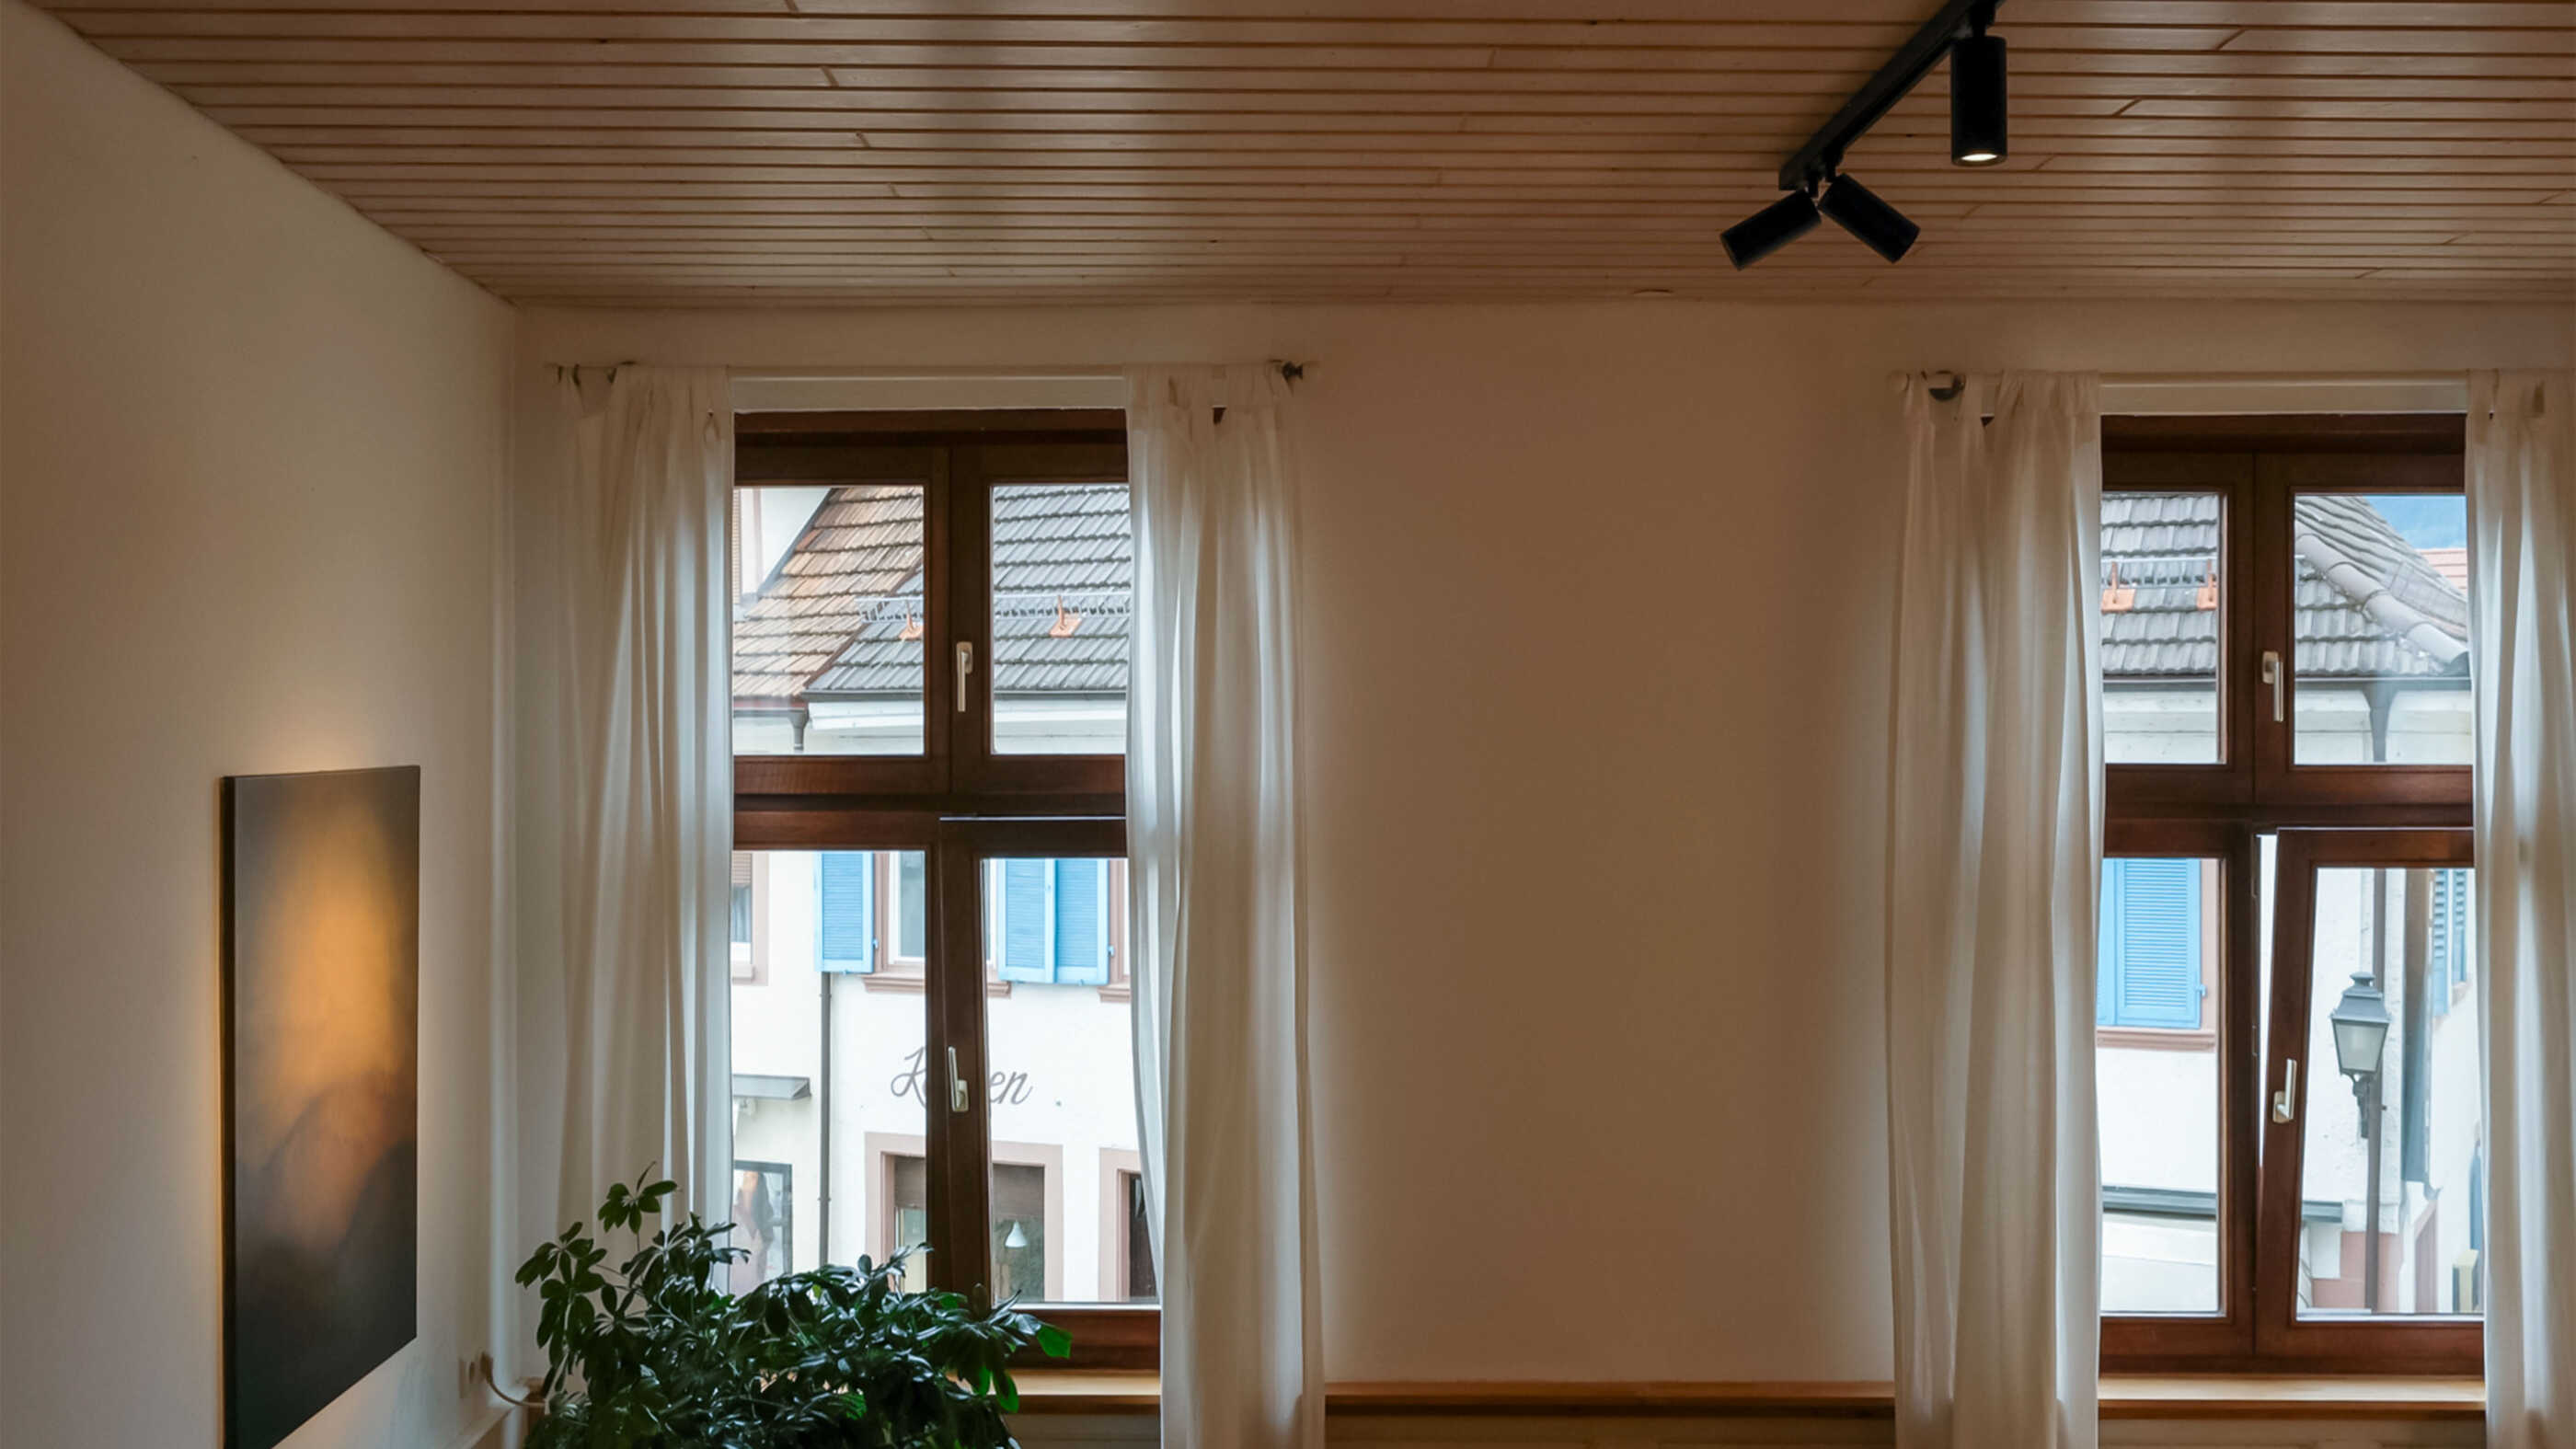 Drei Schienenstrahler an einer Schiene beleuchten ein Wohnzimmer. Gezielt wird das Bild auf der linken Seite angestrahlt, zwei Fenster (voraus) sorgen für Tageslicht.